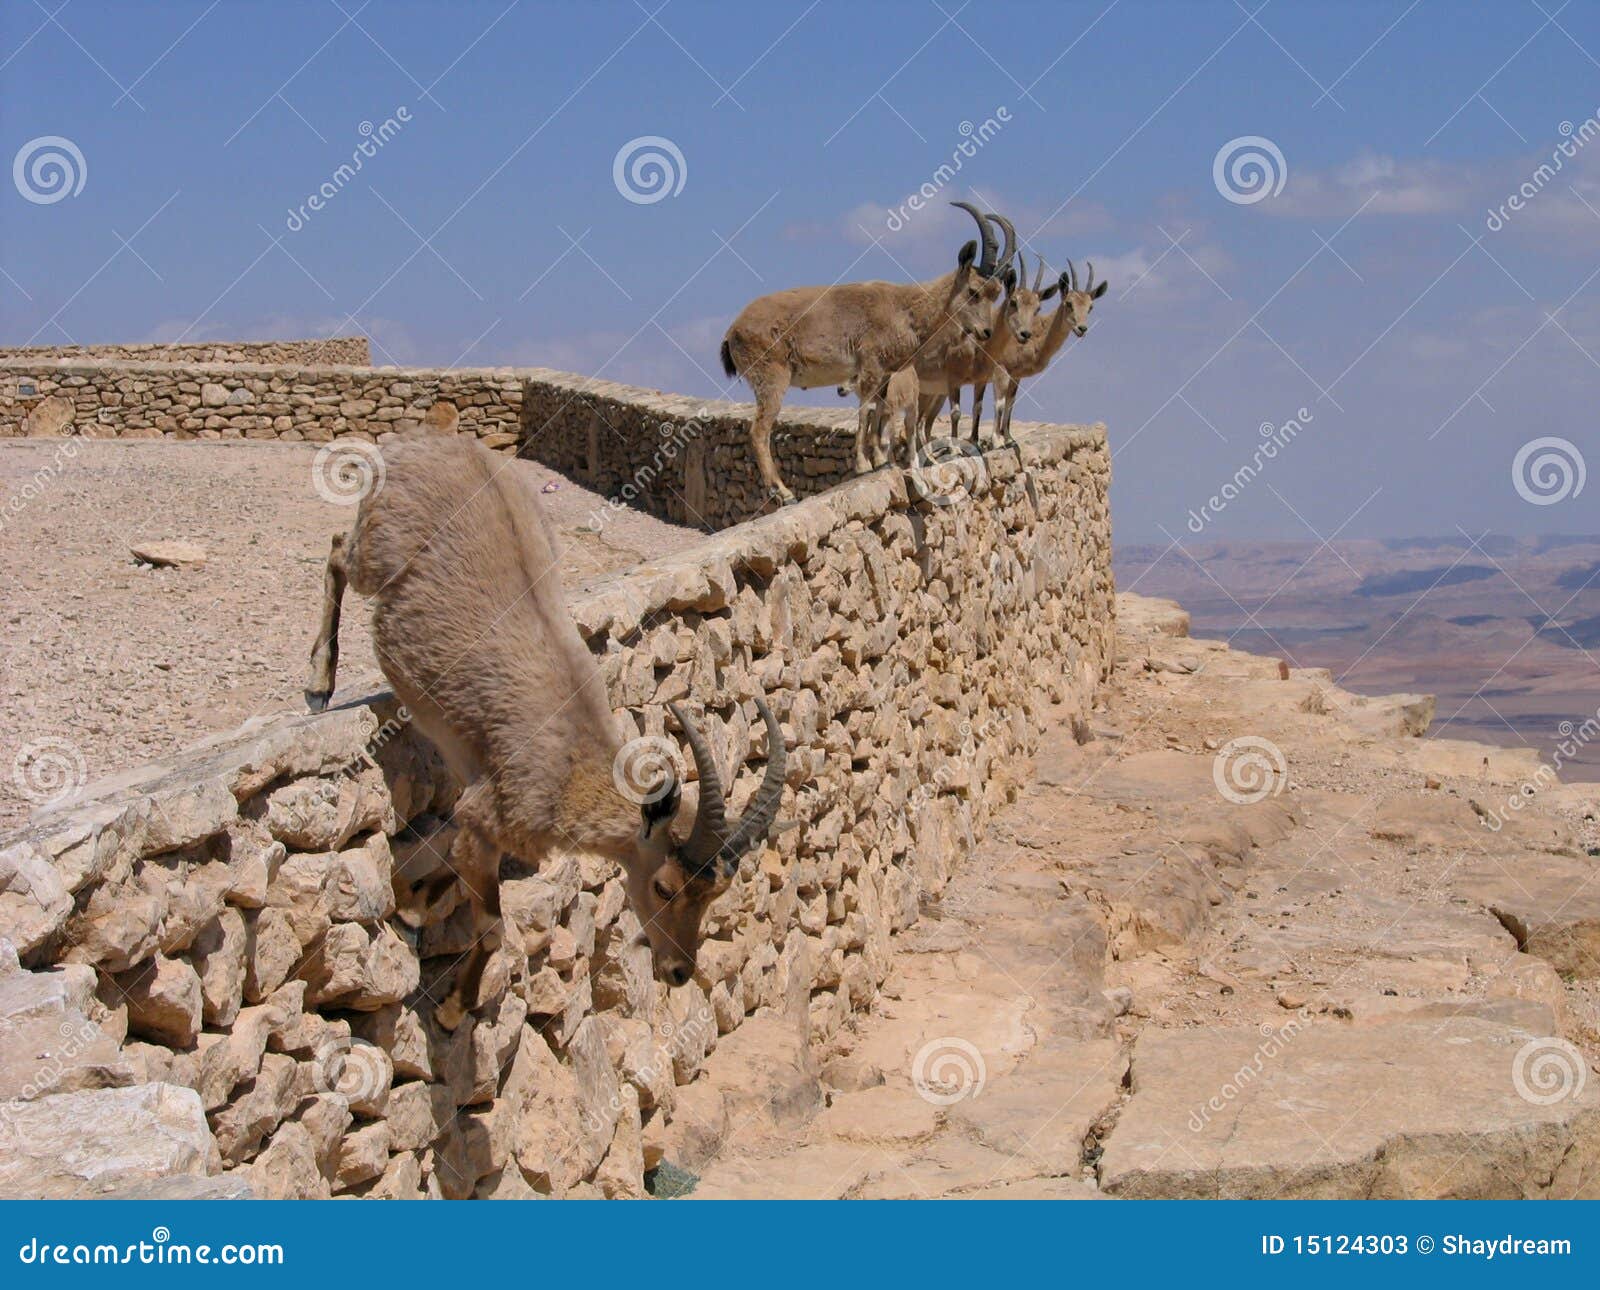 deers at ramon crater (makhtesh), israel